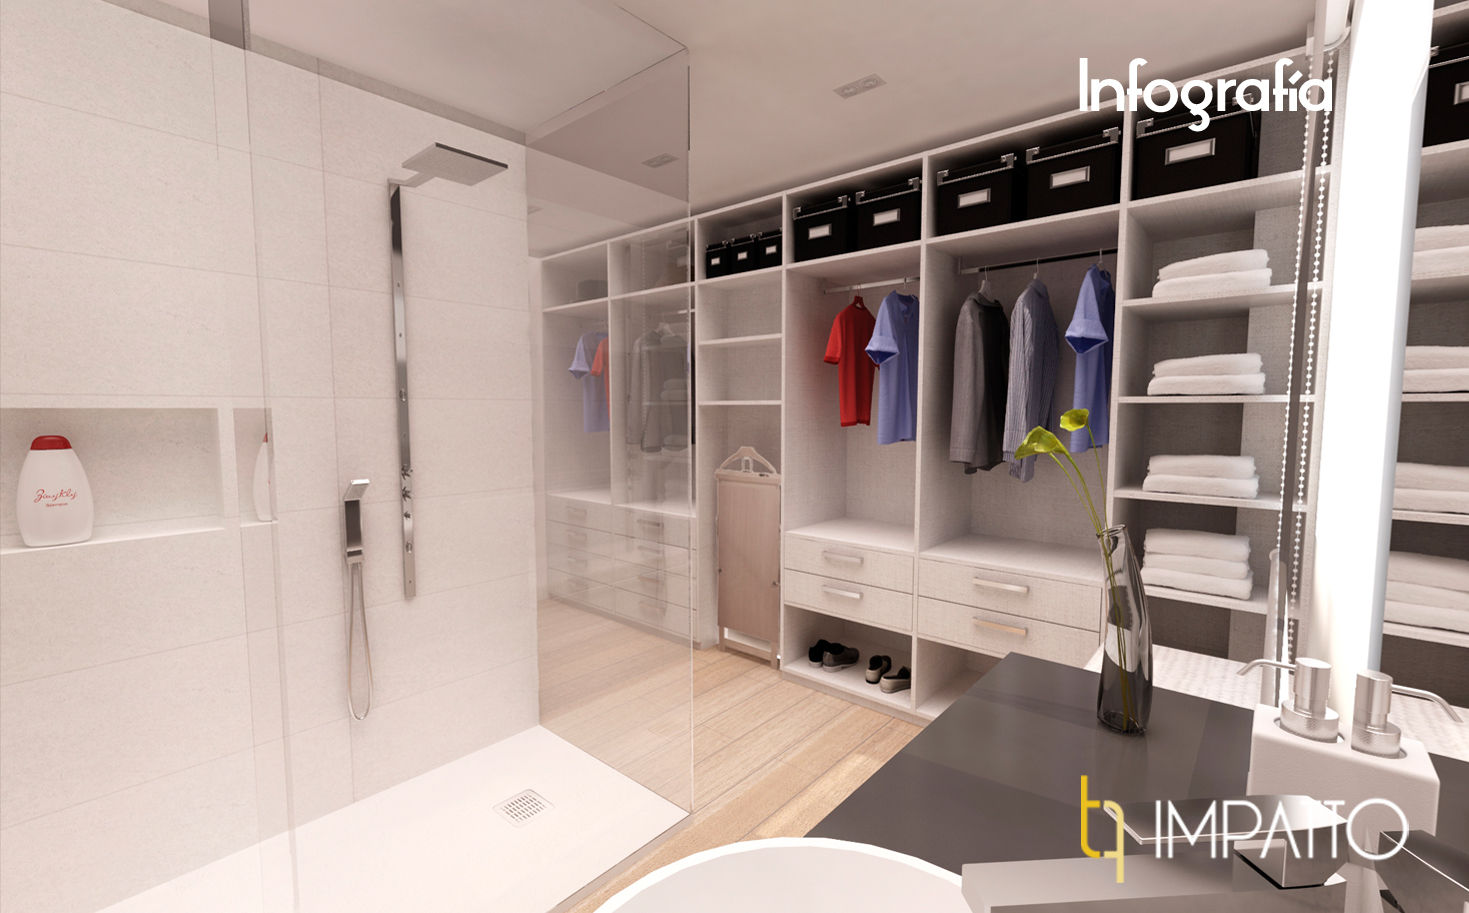 INTERIORISMO: Habitación con vestidor y baño integrados, Ausias March (Valencia), IMPATTO IMPATTO Vestidores de estilo minimalista